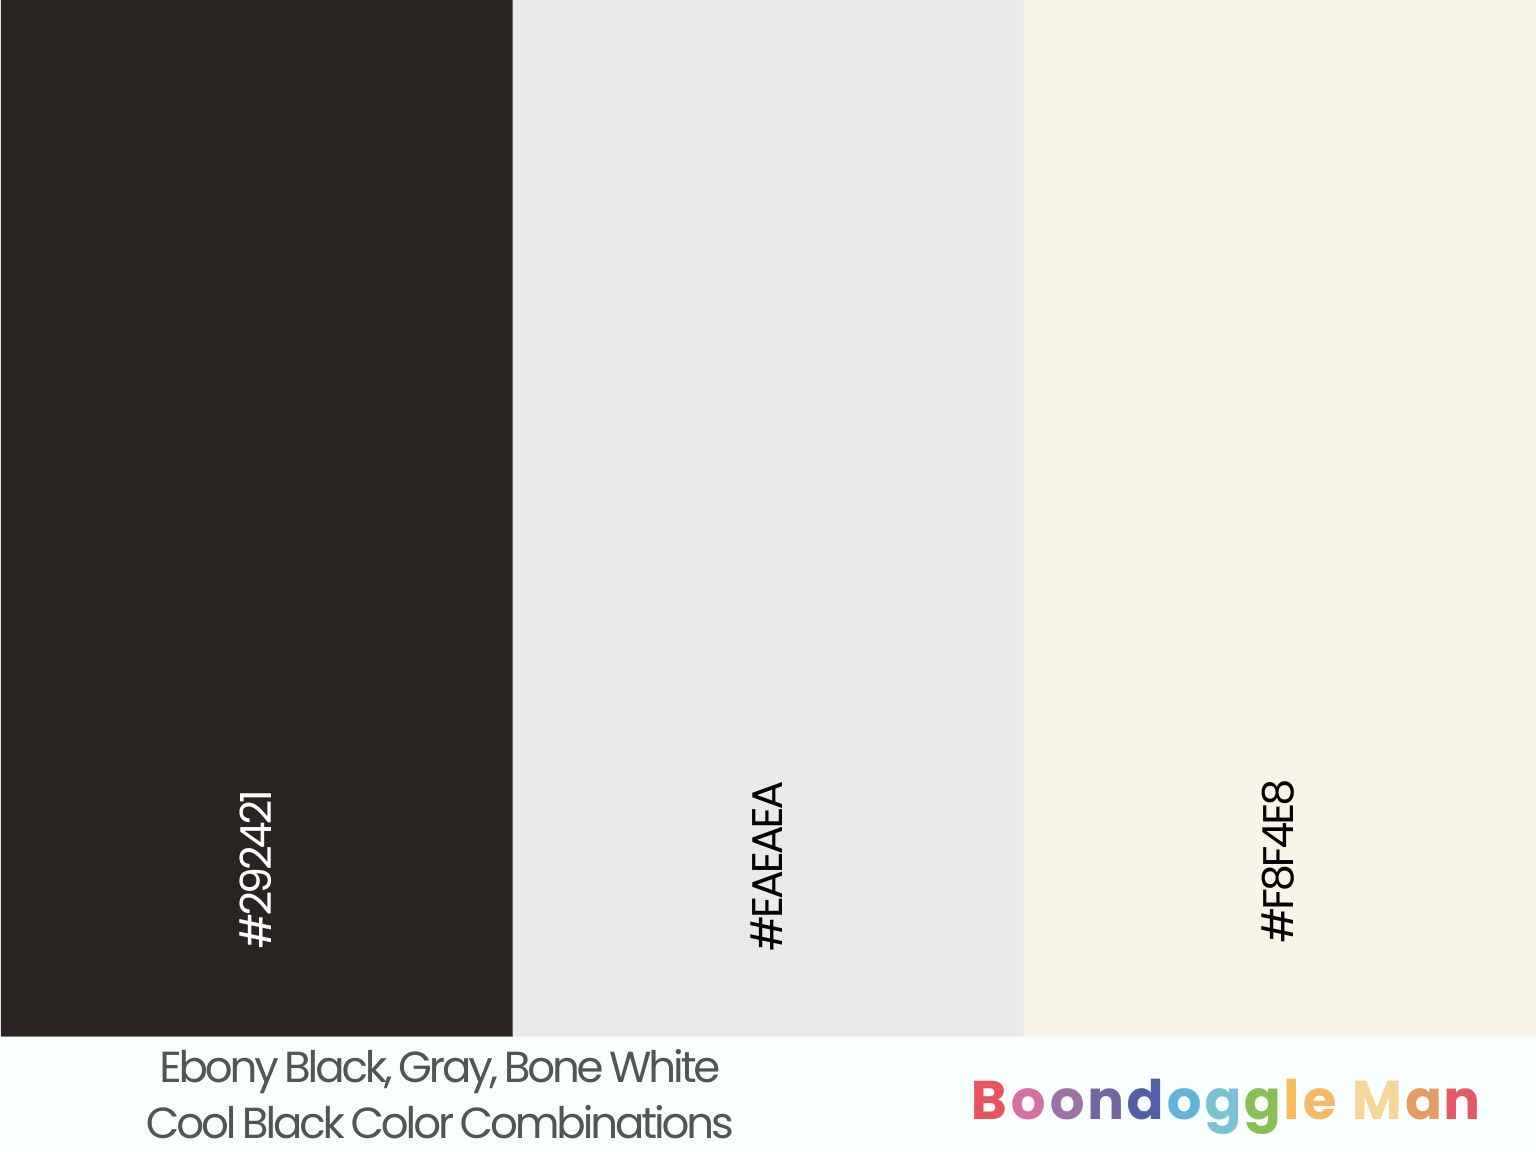 Ebony Black, Gray, Bone White